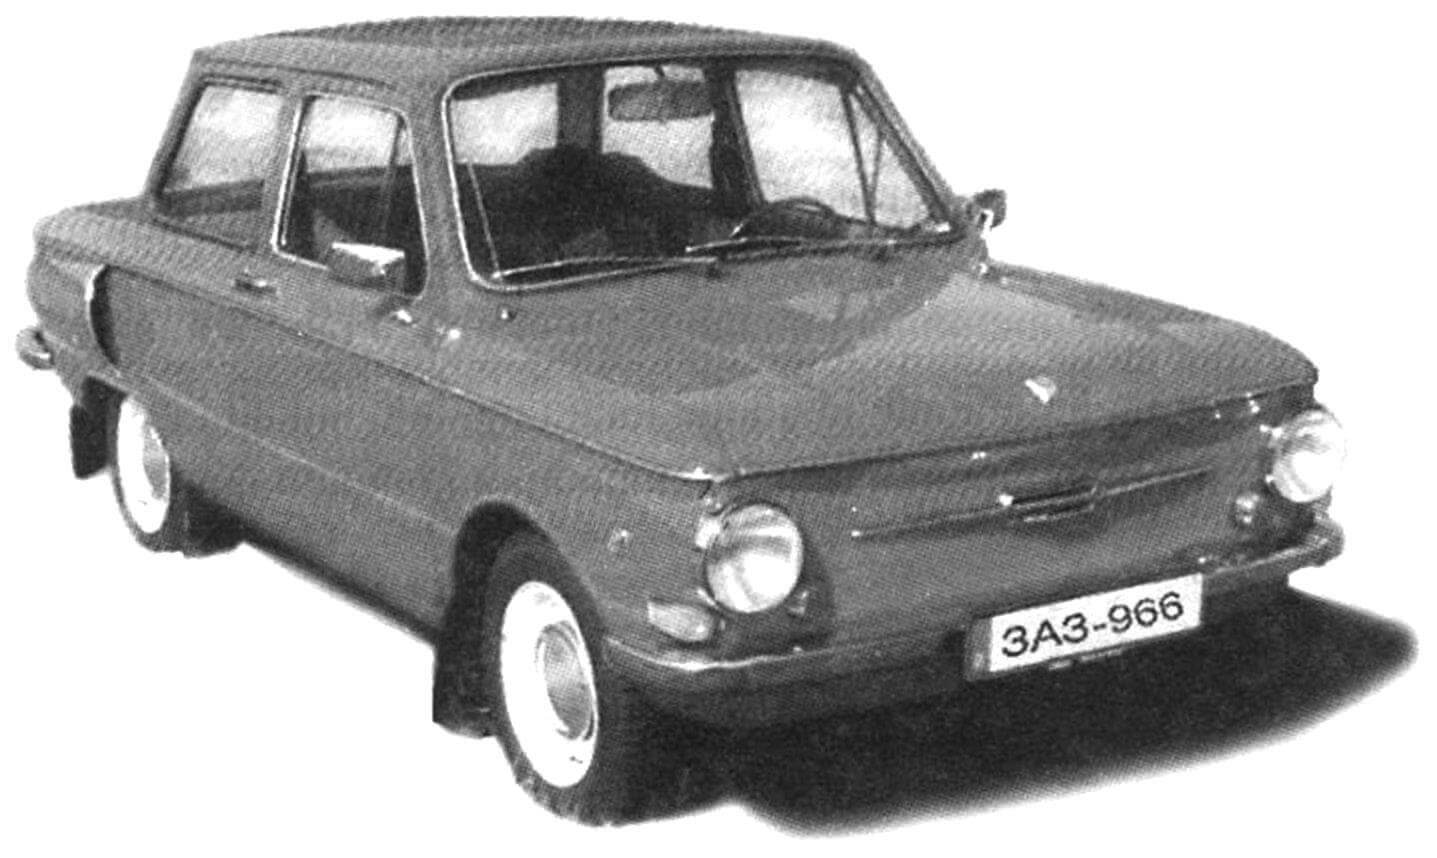 ЗАЗ-966 выпуска 1968 года, прозванный "Ушастым" из-за боковых воздухозаборников, представлял собой классический двухдверный четырехместный седан